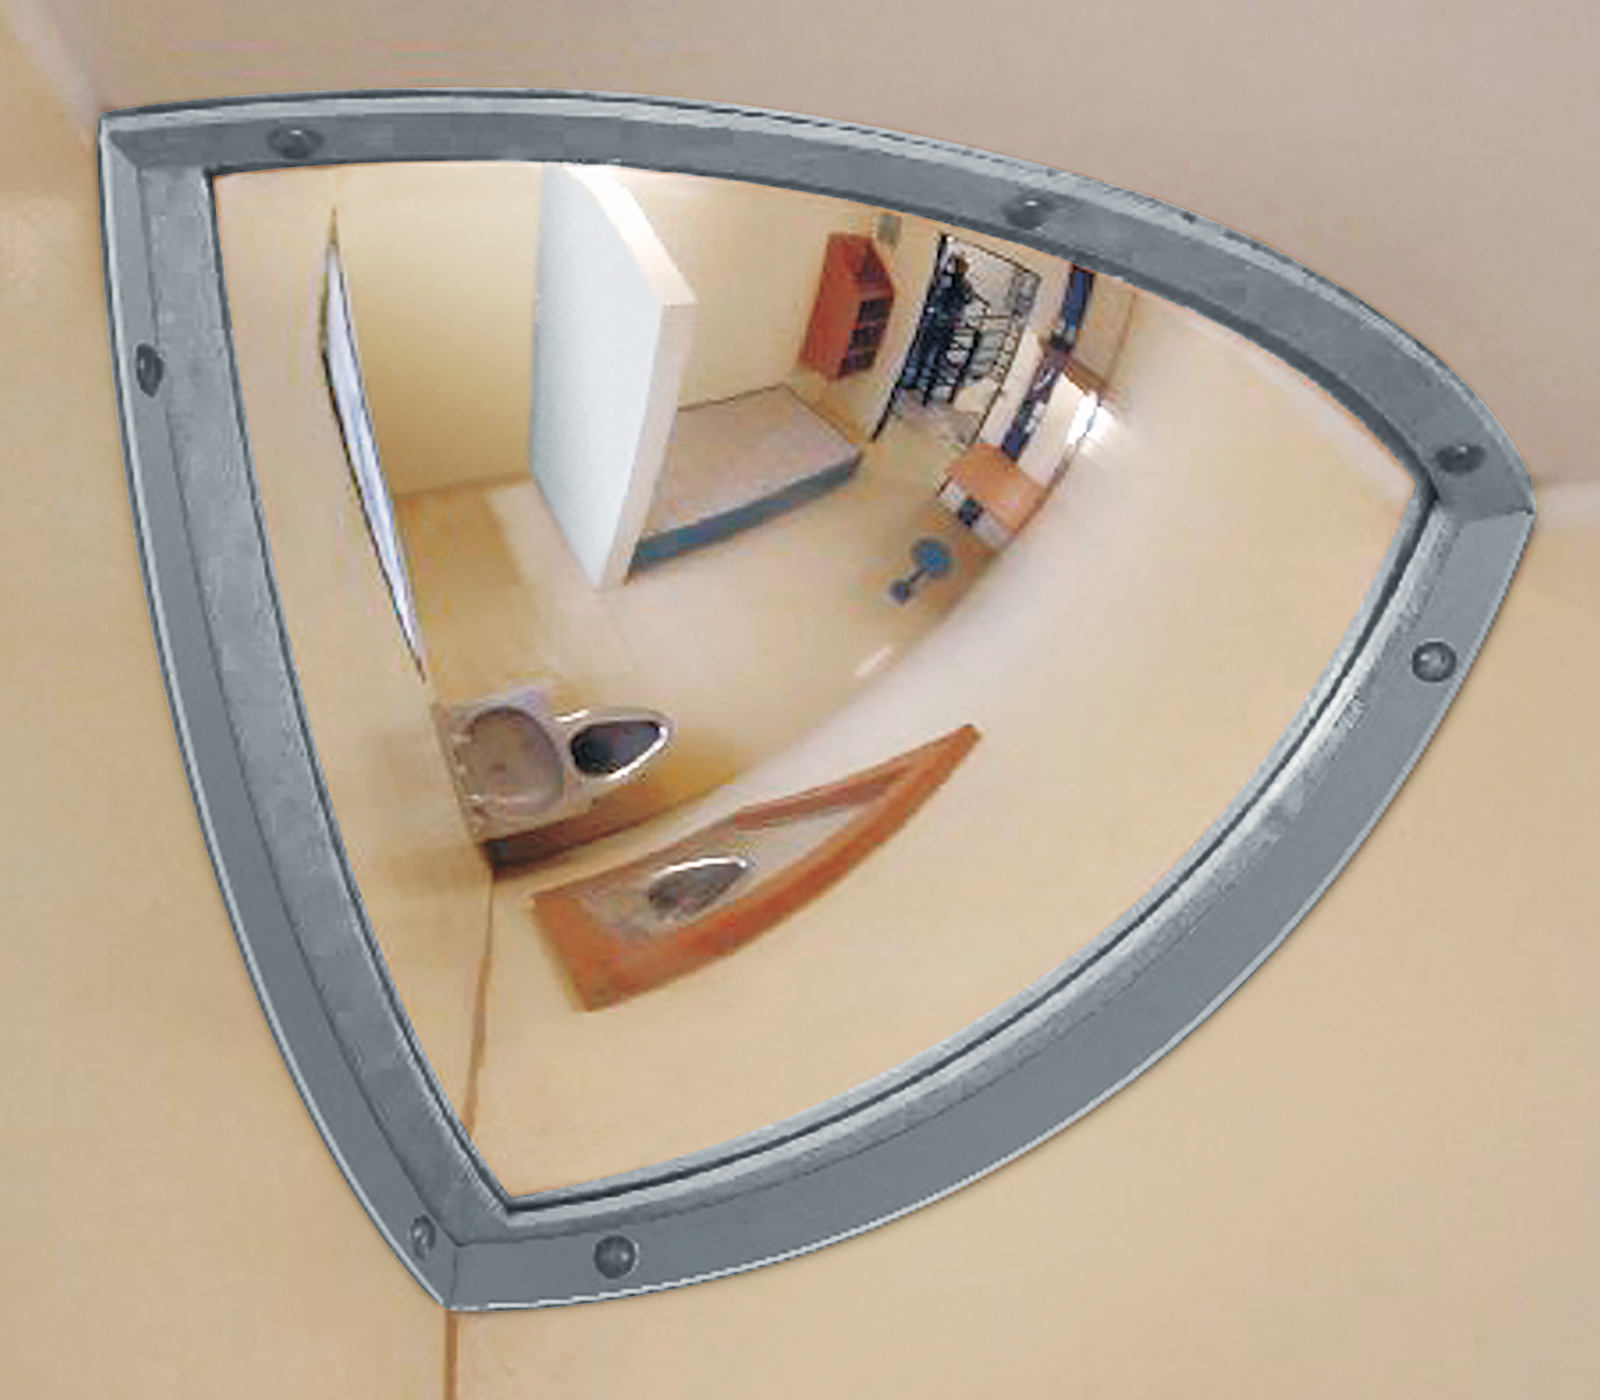 NEU Magnet-Spiegel Inox Mirror Schweiß-Spiegel flexibel biegsam hohe Qualität 